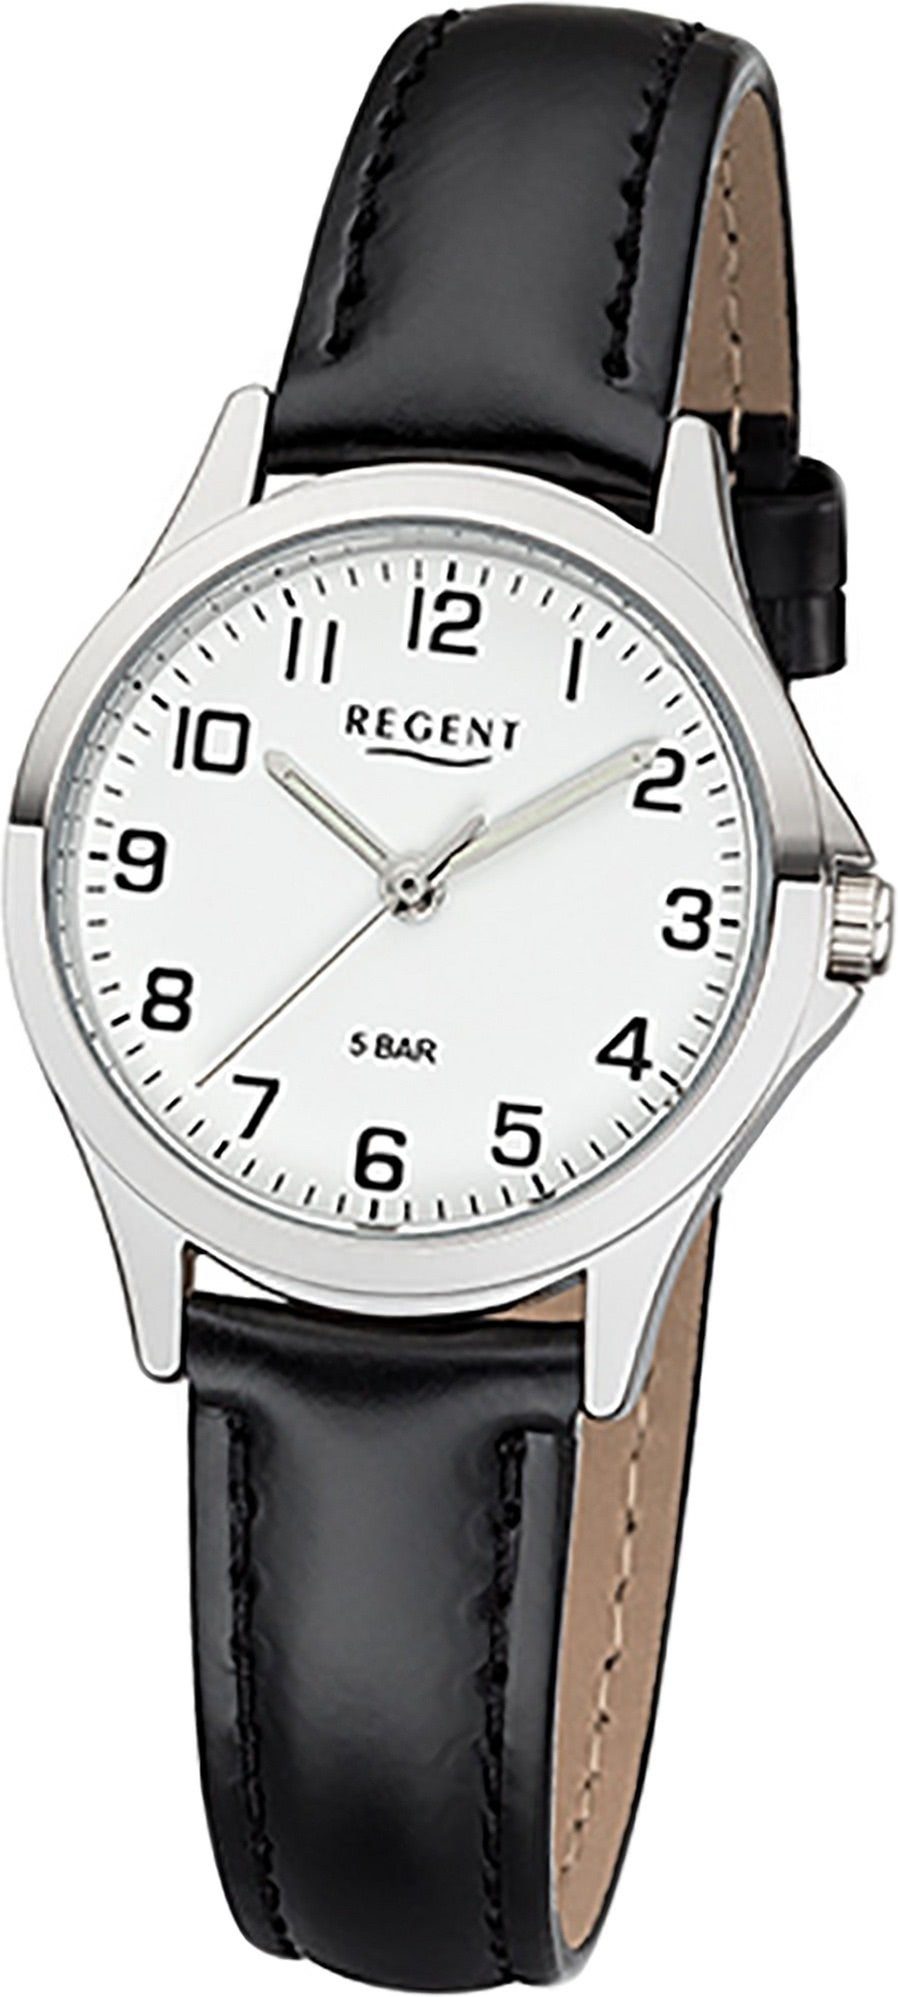 Regent Quarzuhr Regent Leder Damen Uhr 2112418 Analog, Damenuhr Lederarmband schwarz, rundes Gehäuse, klein (ca. 29mm)